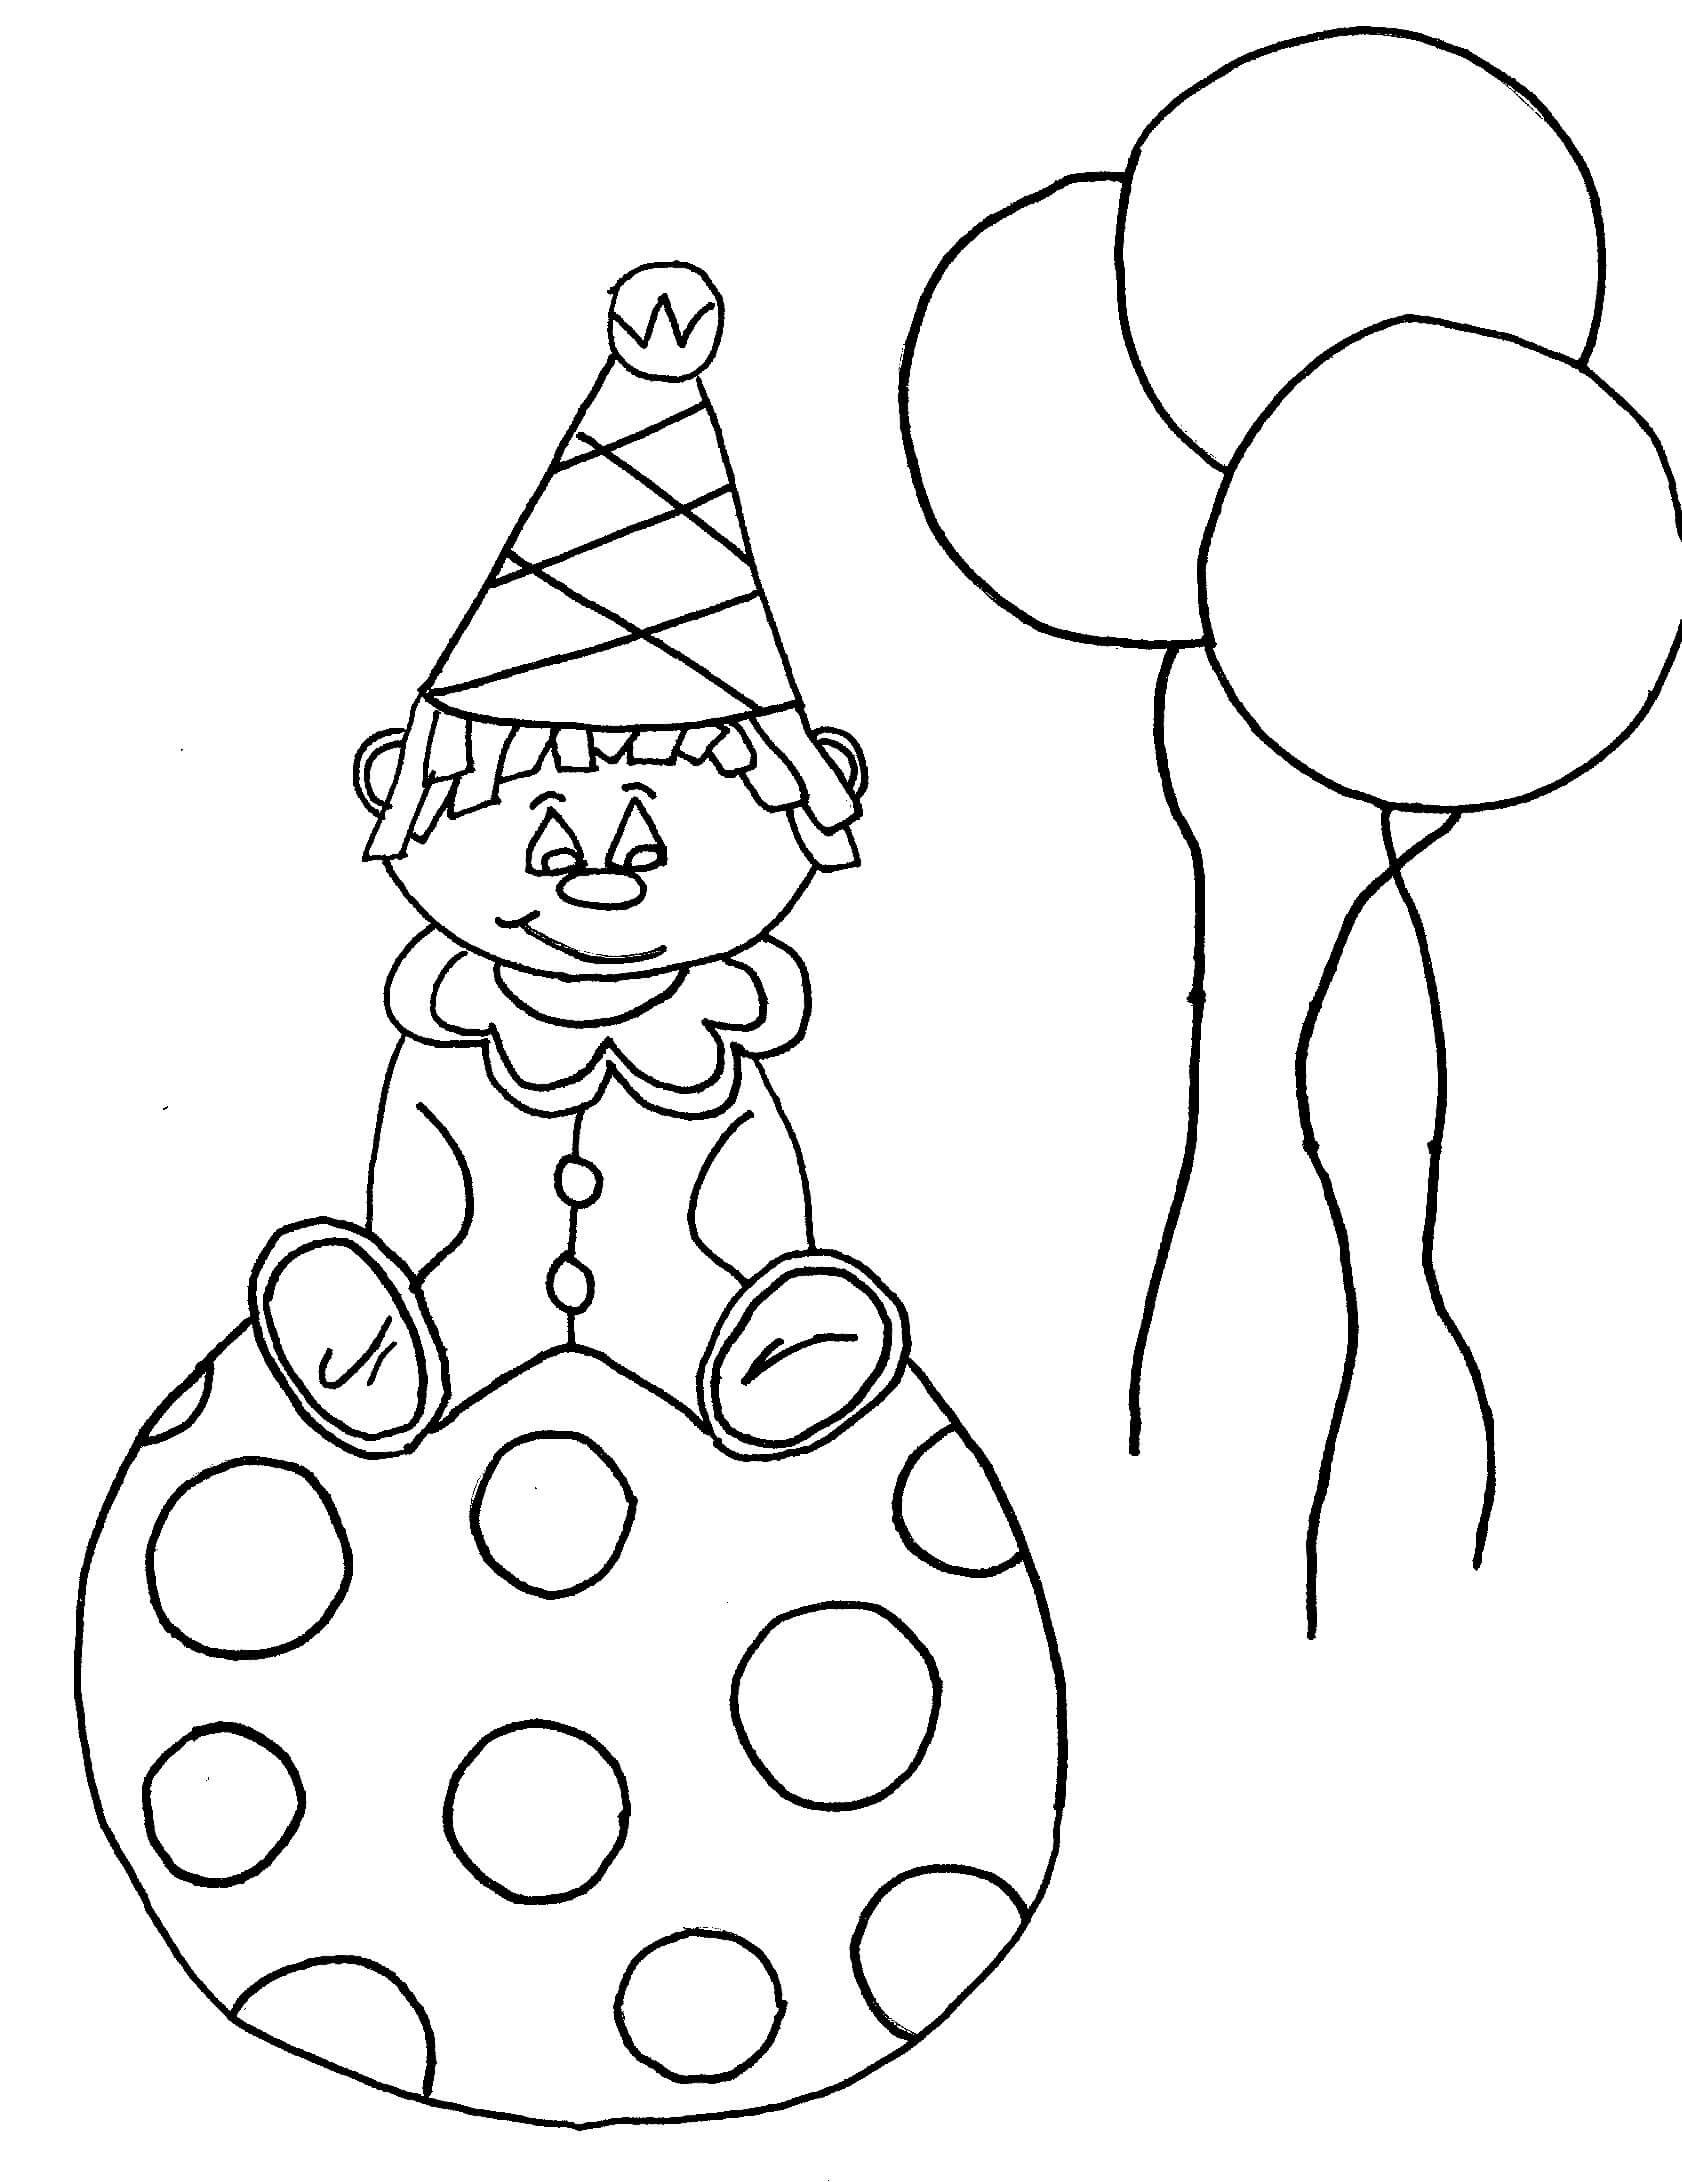 Palhaço Sentado na Bola com Balões para colorir